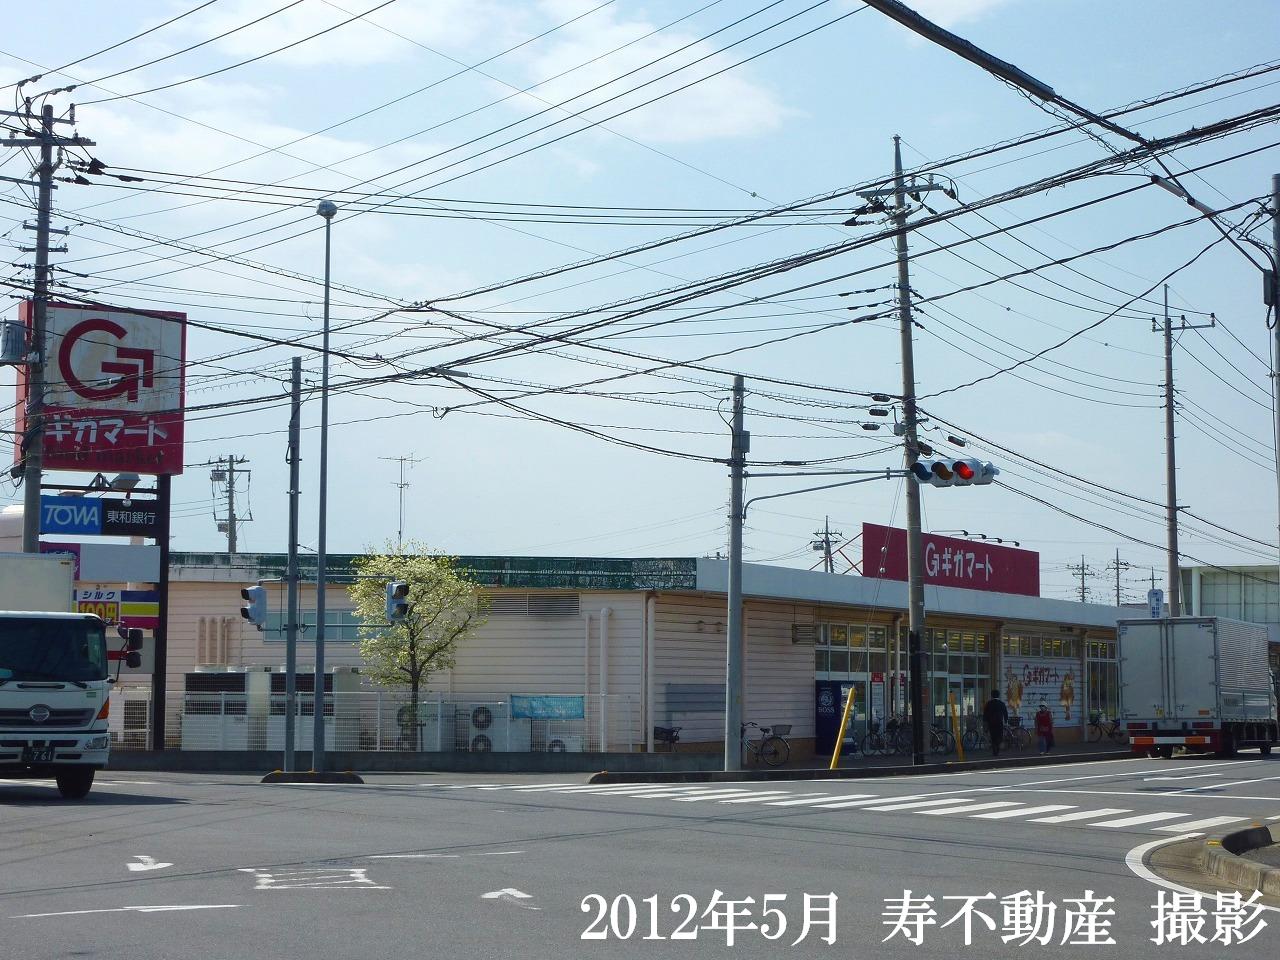 Supermarket. Gigamato Kamihideya store up to (super) 552m